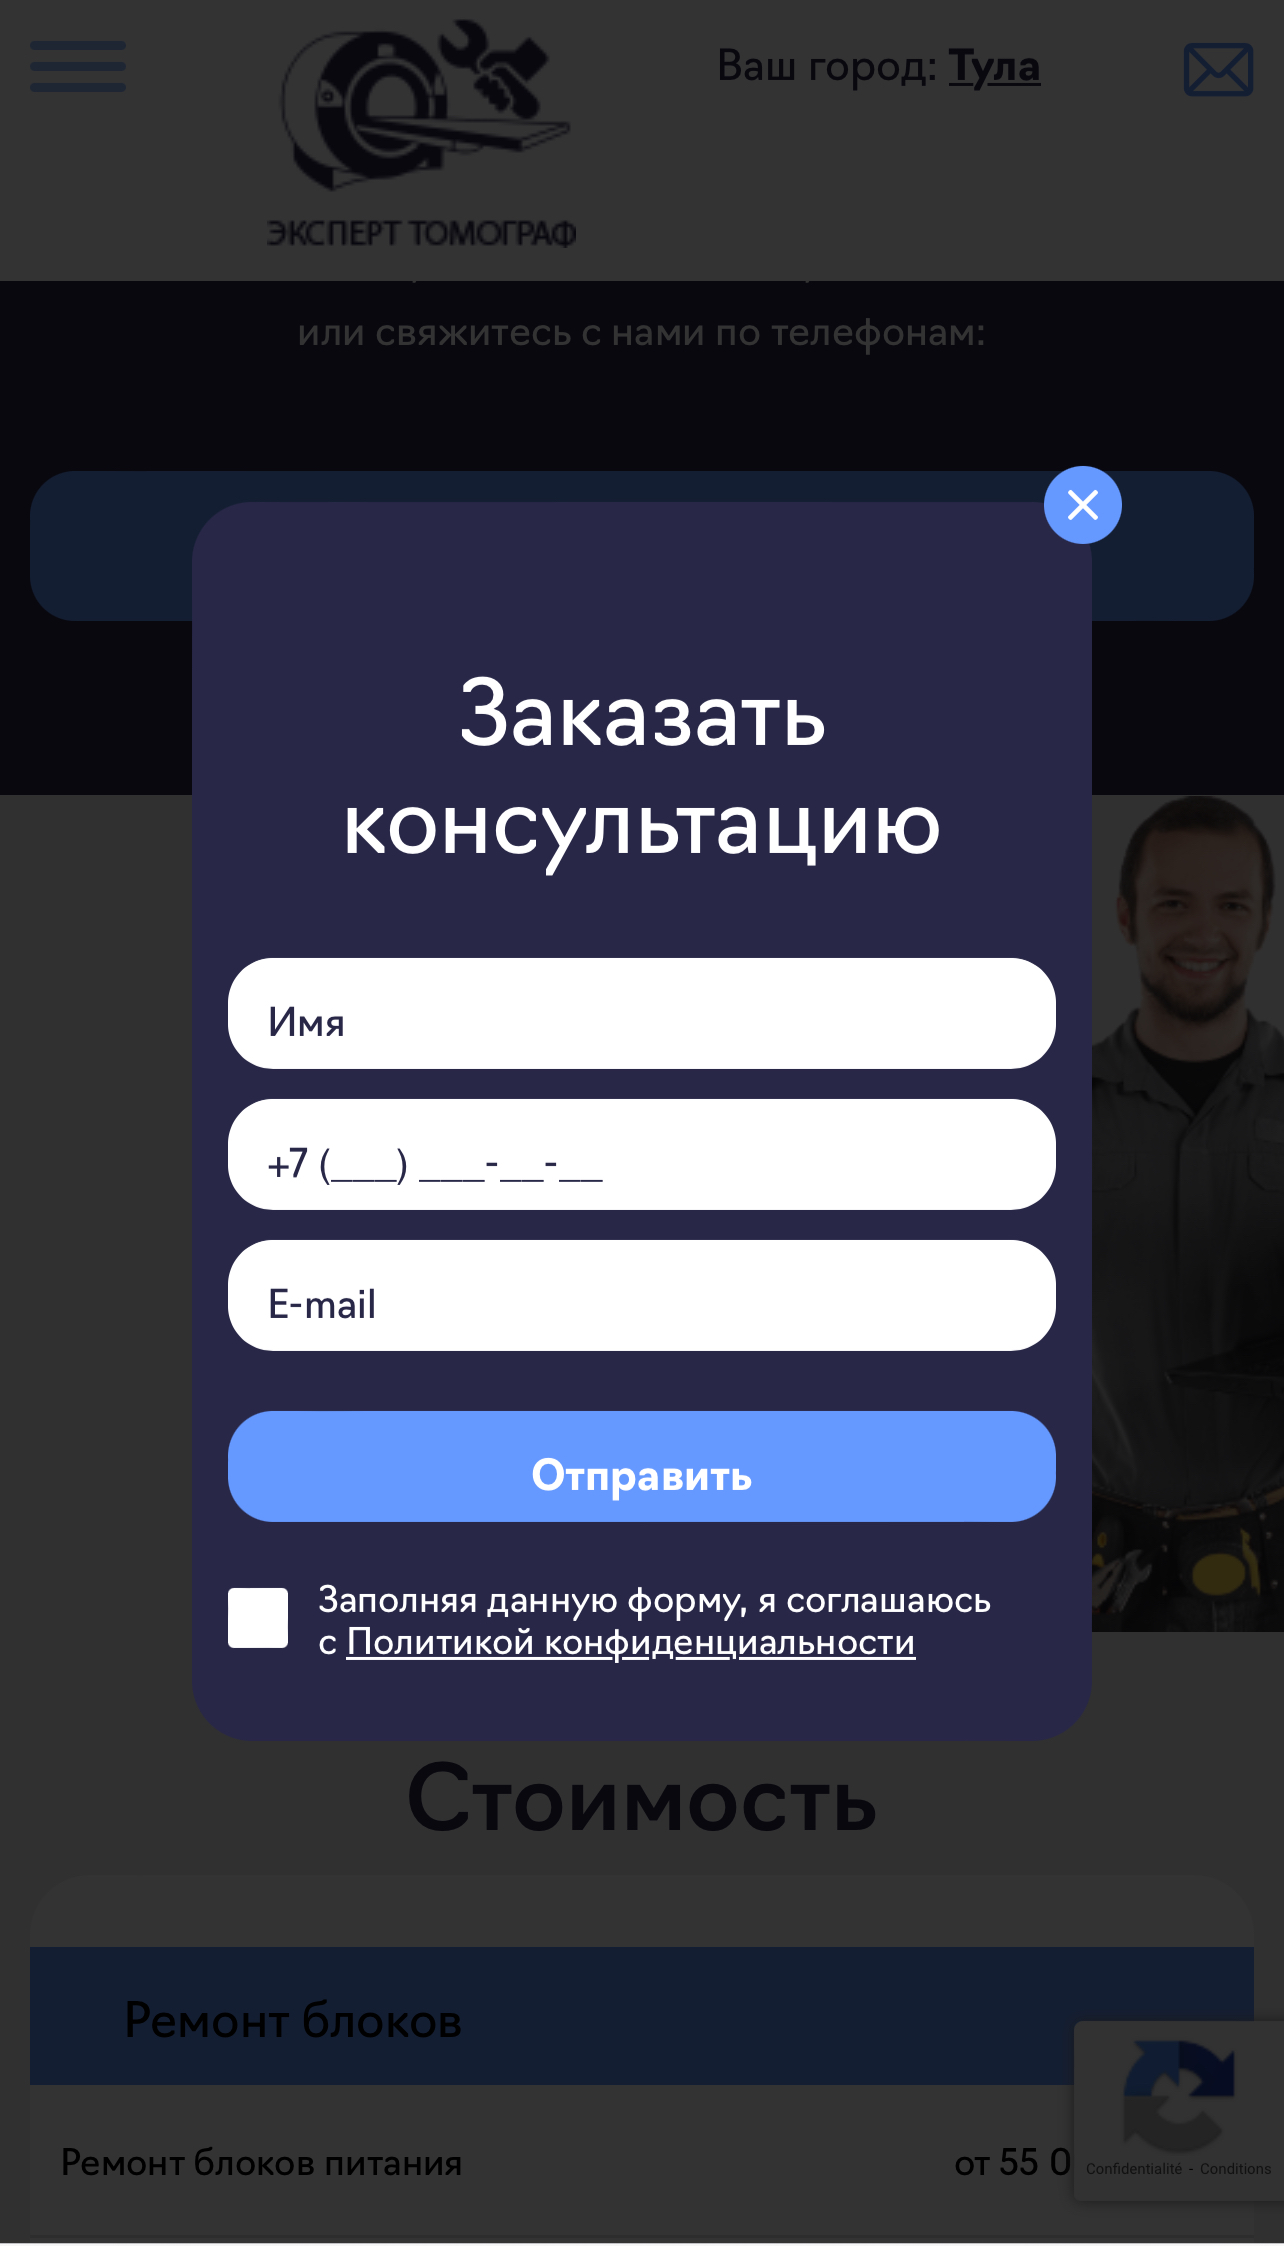 expert-tomograph.ru / Форма заявки